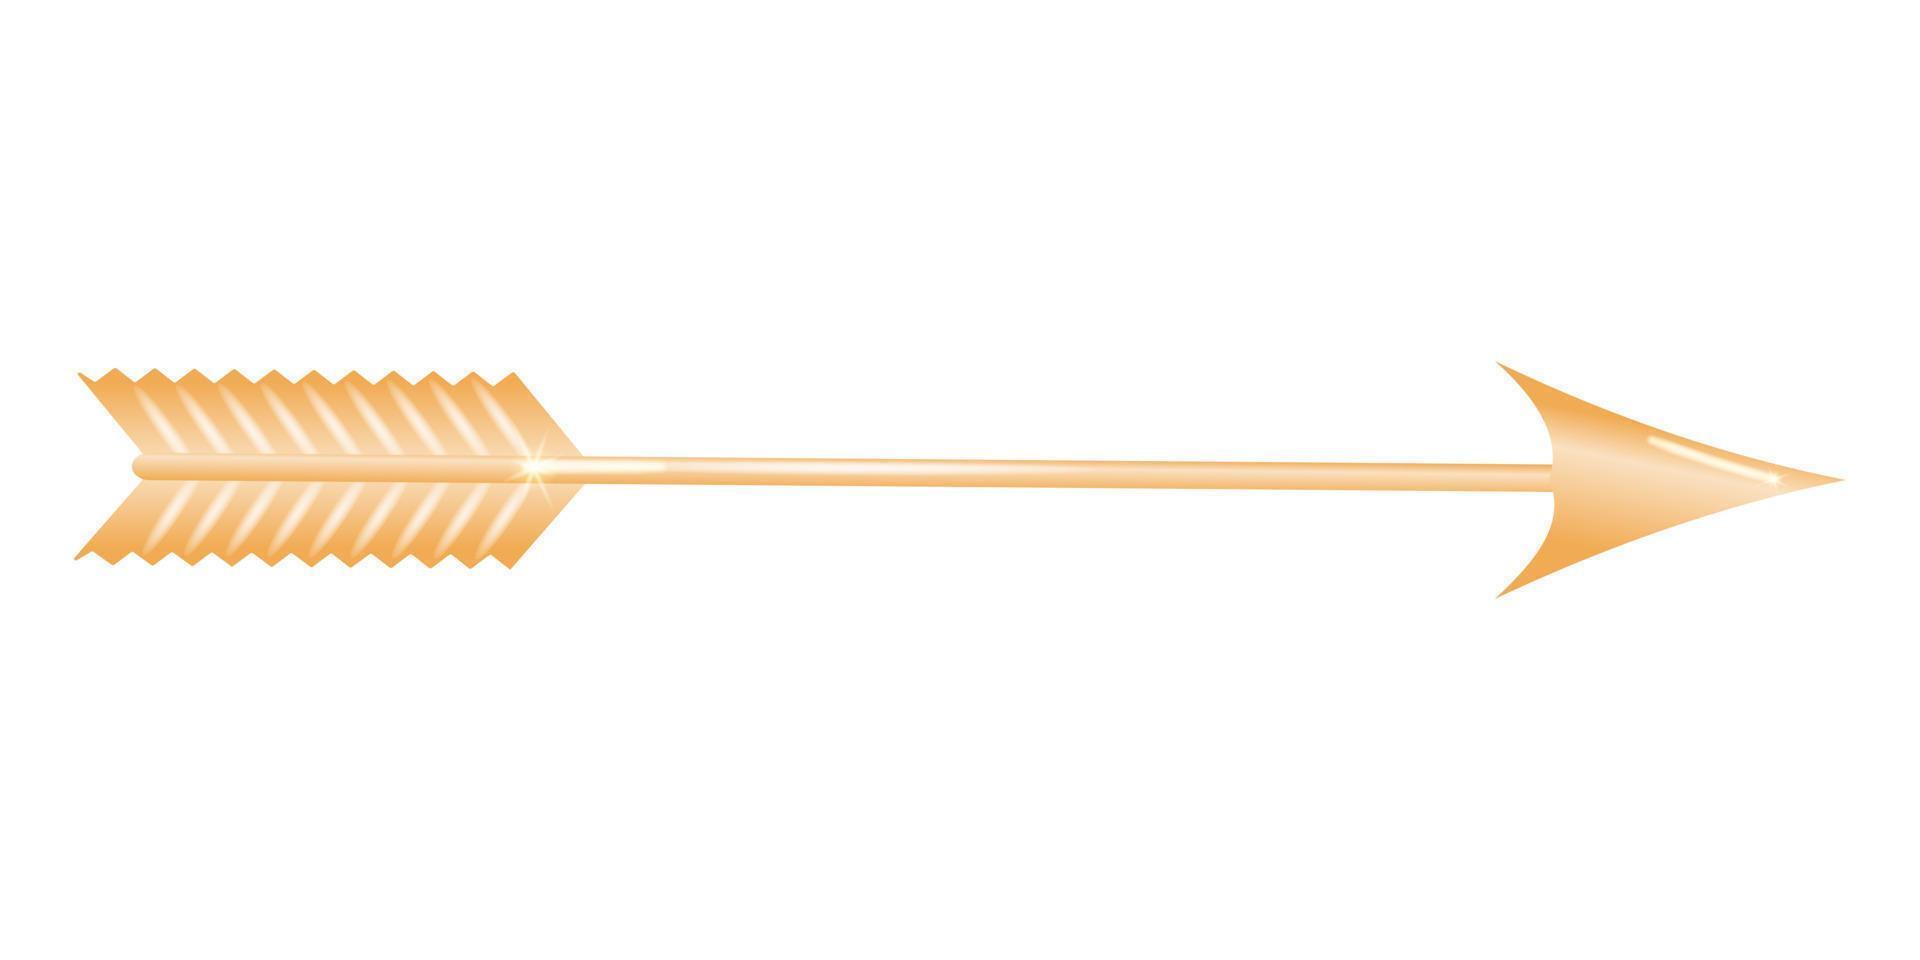 d'or La Flèche 3d. arbre aiguisé à le de face et avec plumes ou aubes à le dos, coup de une arc comme une arme ou pour sport. vecteur illustration.